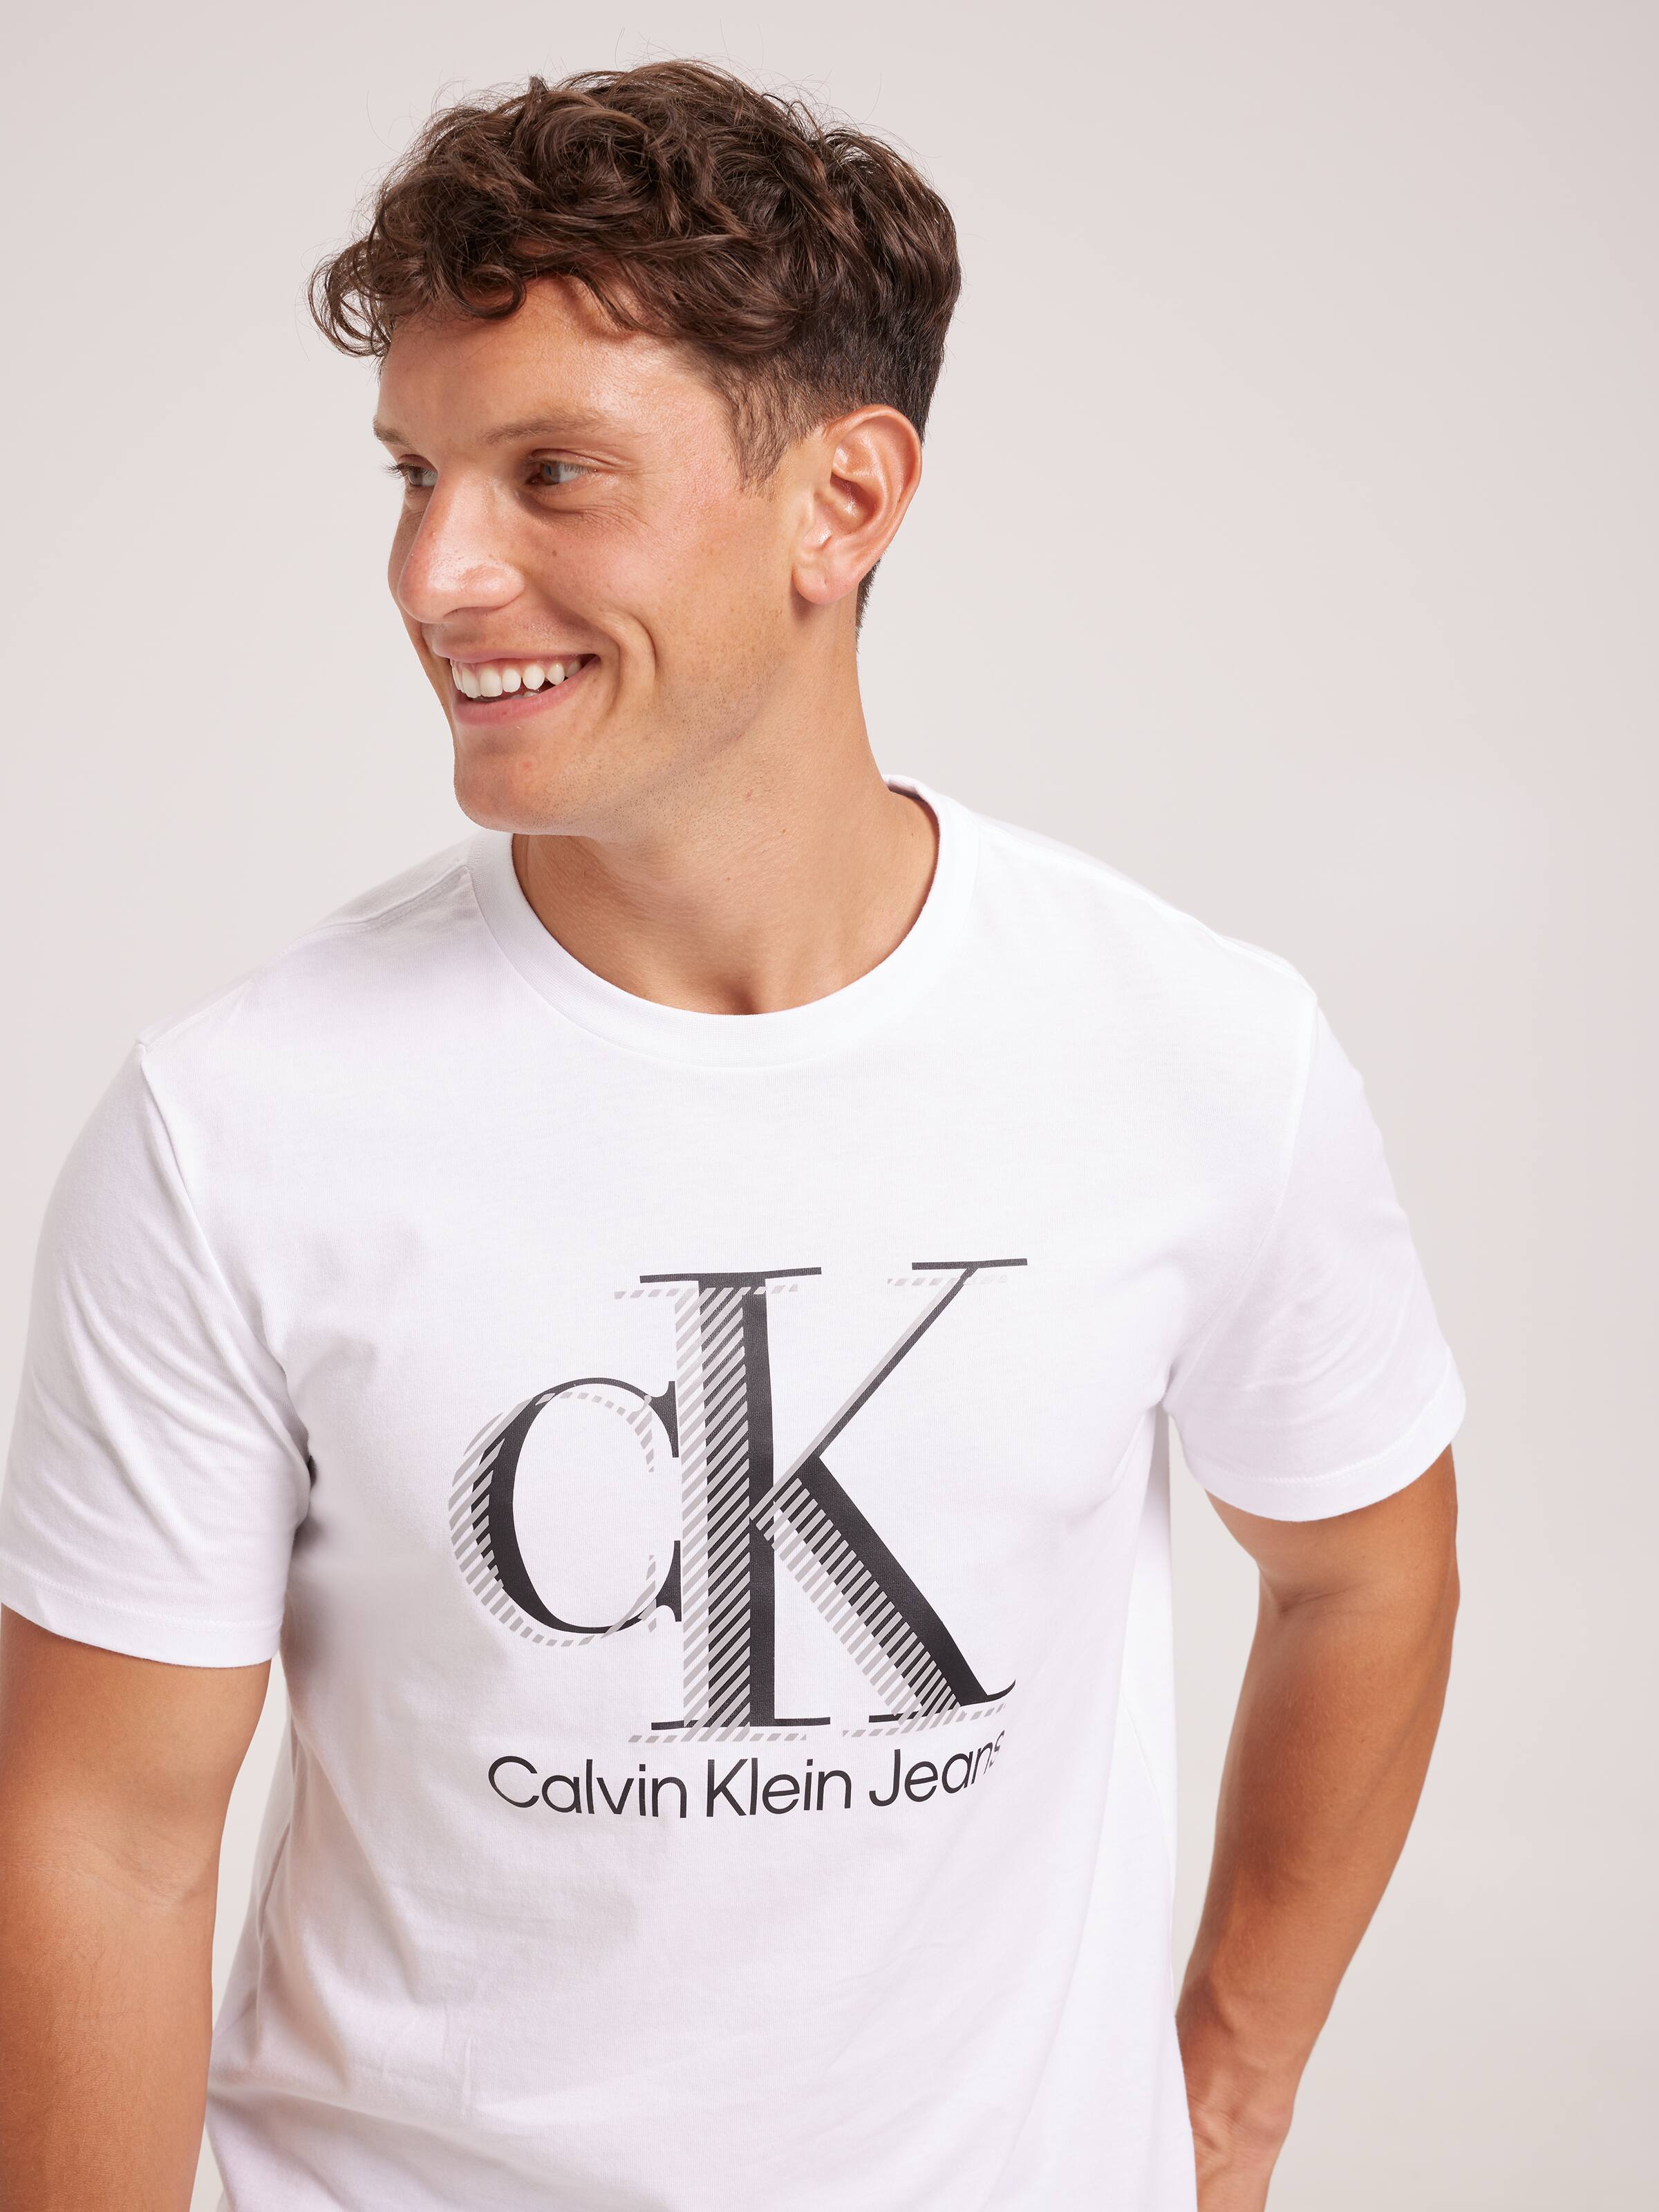 Calvin Klein Black Dark Horse T-Shirt Calvin Klein